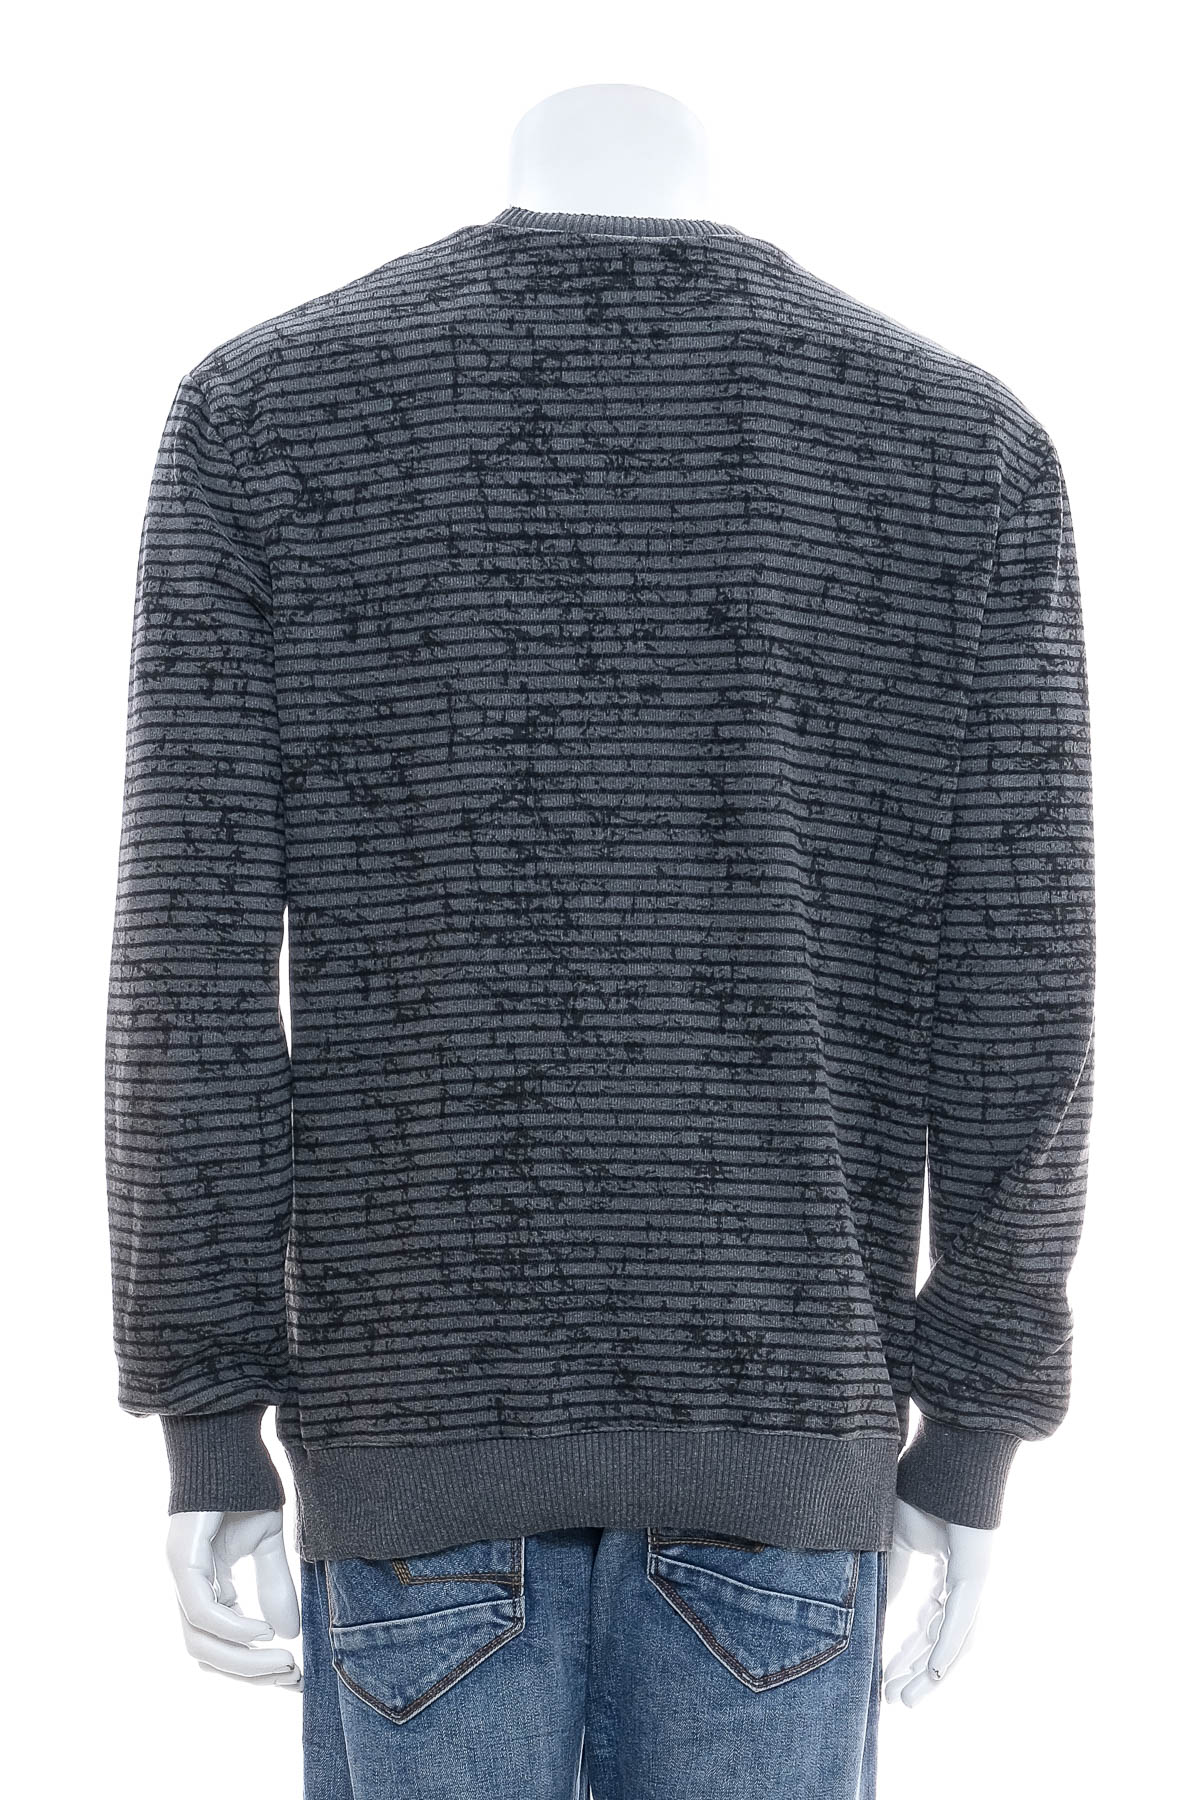 Men's sweater - Louis Park - 1